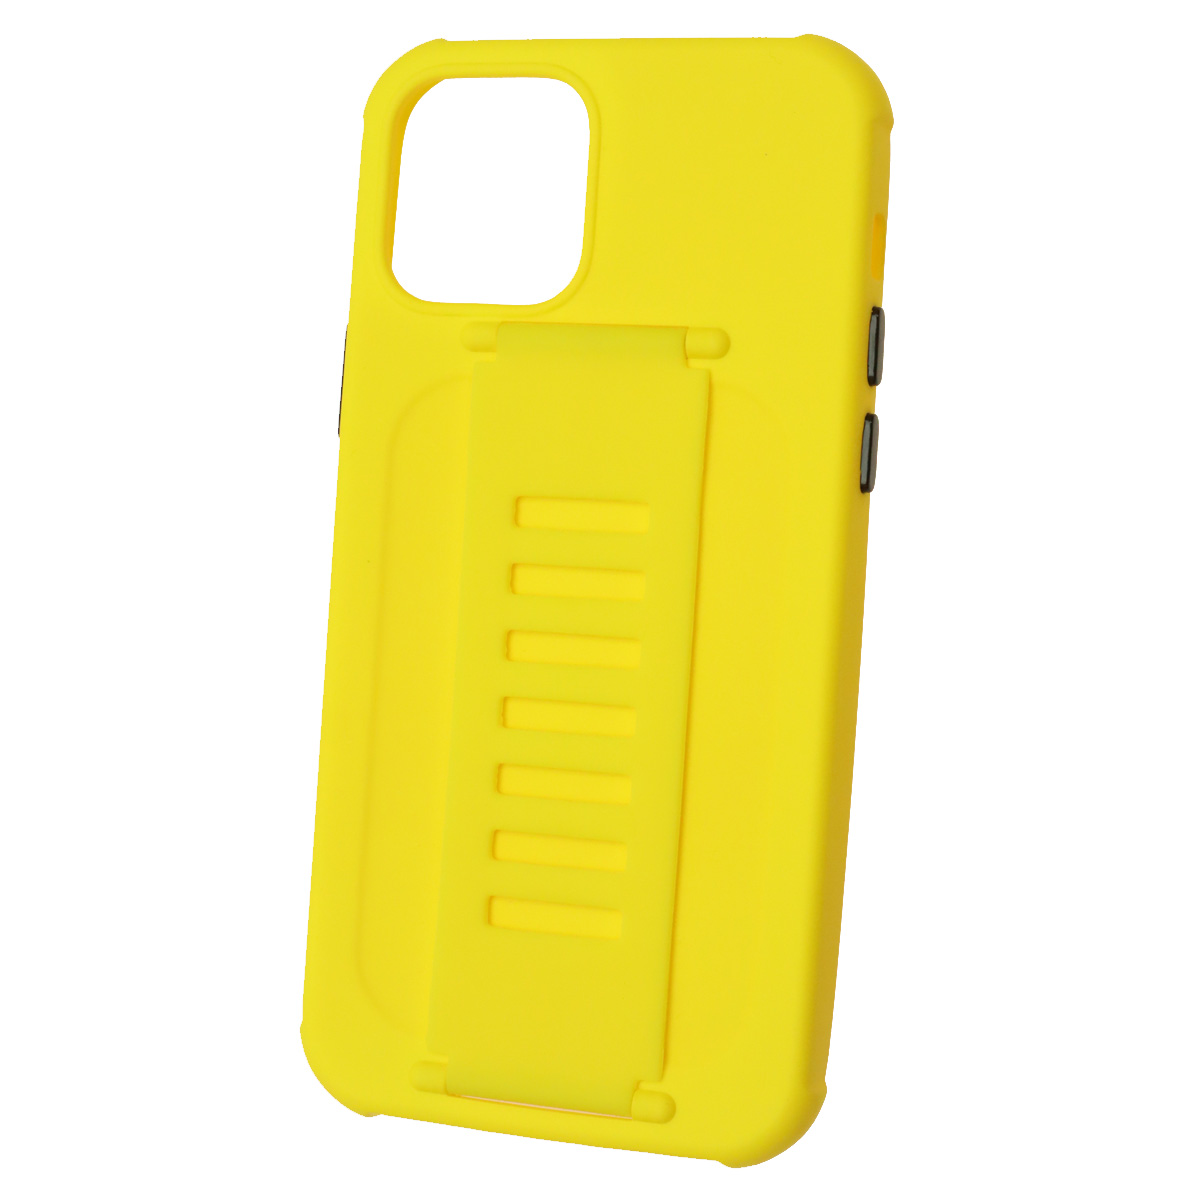 Чехол накладка LADDER NANO для APPLE iPhone 12, iPhone 12 PRO (6.1), силикон, держатель, цвет желтый